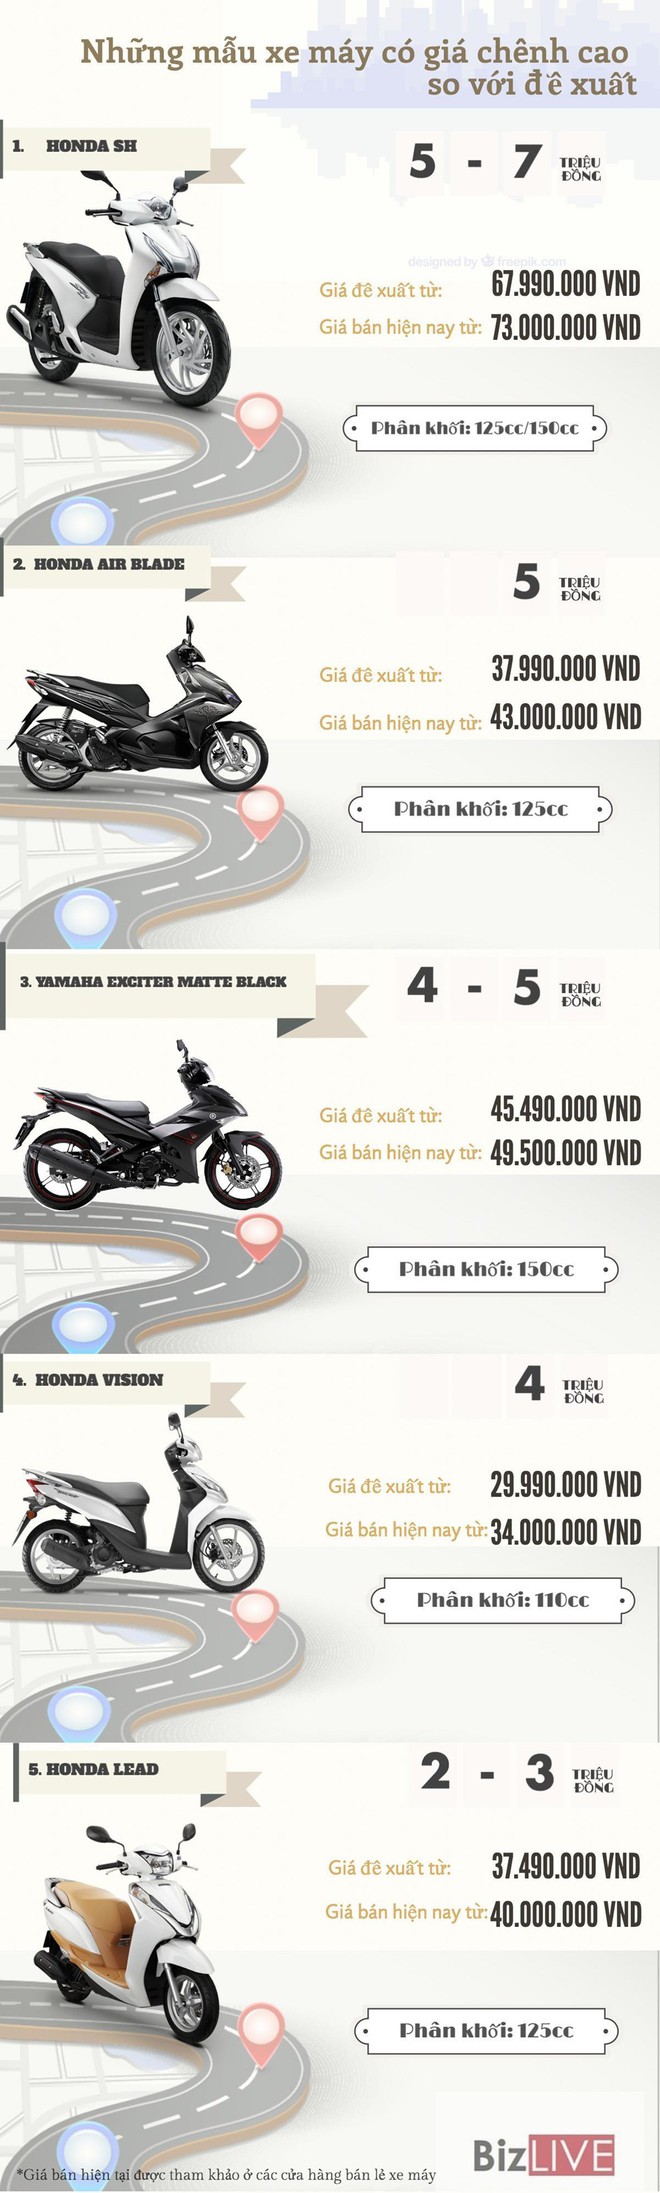 [Infographic] Những mẫu xe máy đang bán đắt hơn so với giá đề xuất - Ảnh 1.